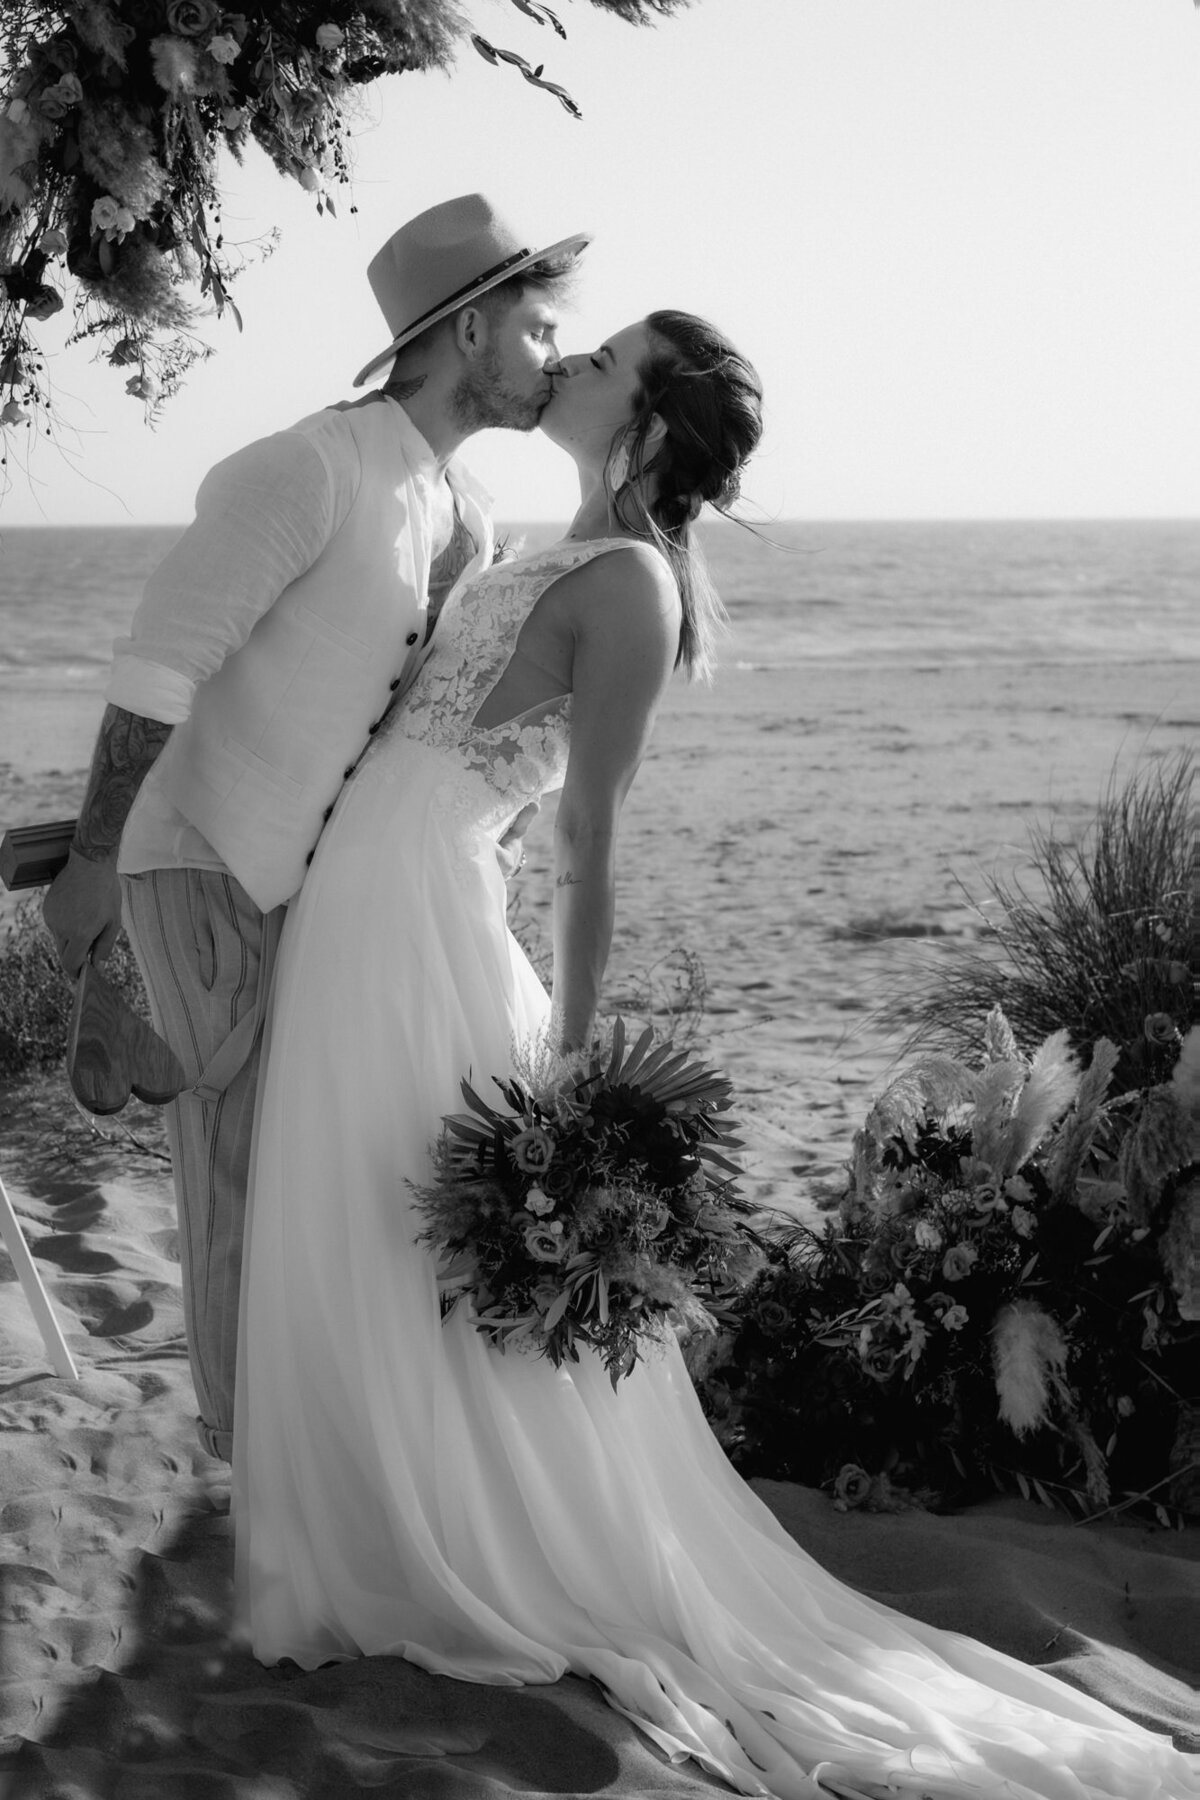 Die Braut neigt sich leicht nach hinten, als der Bräutigam sie liebevoll küsst.